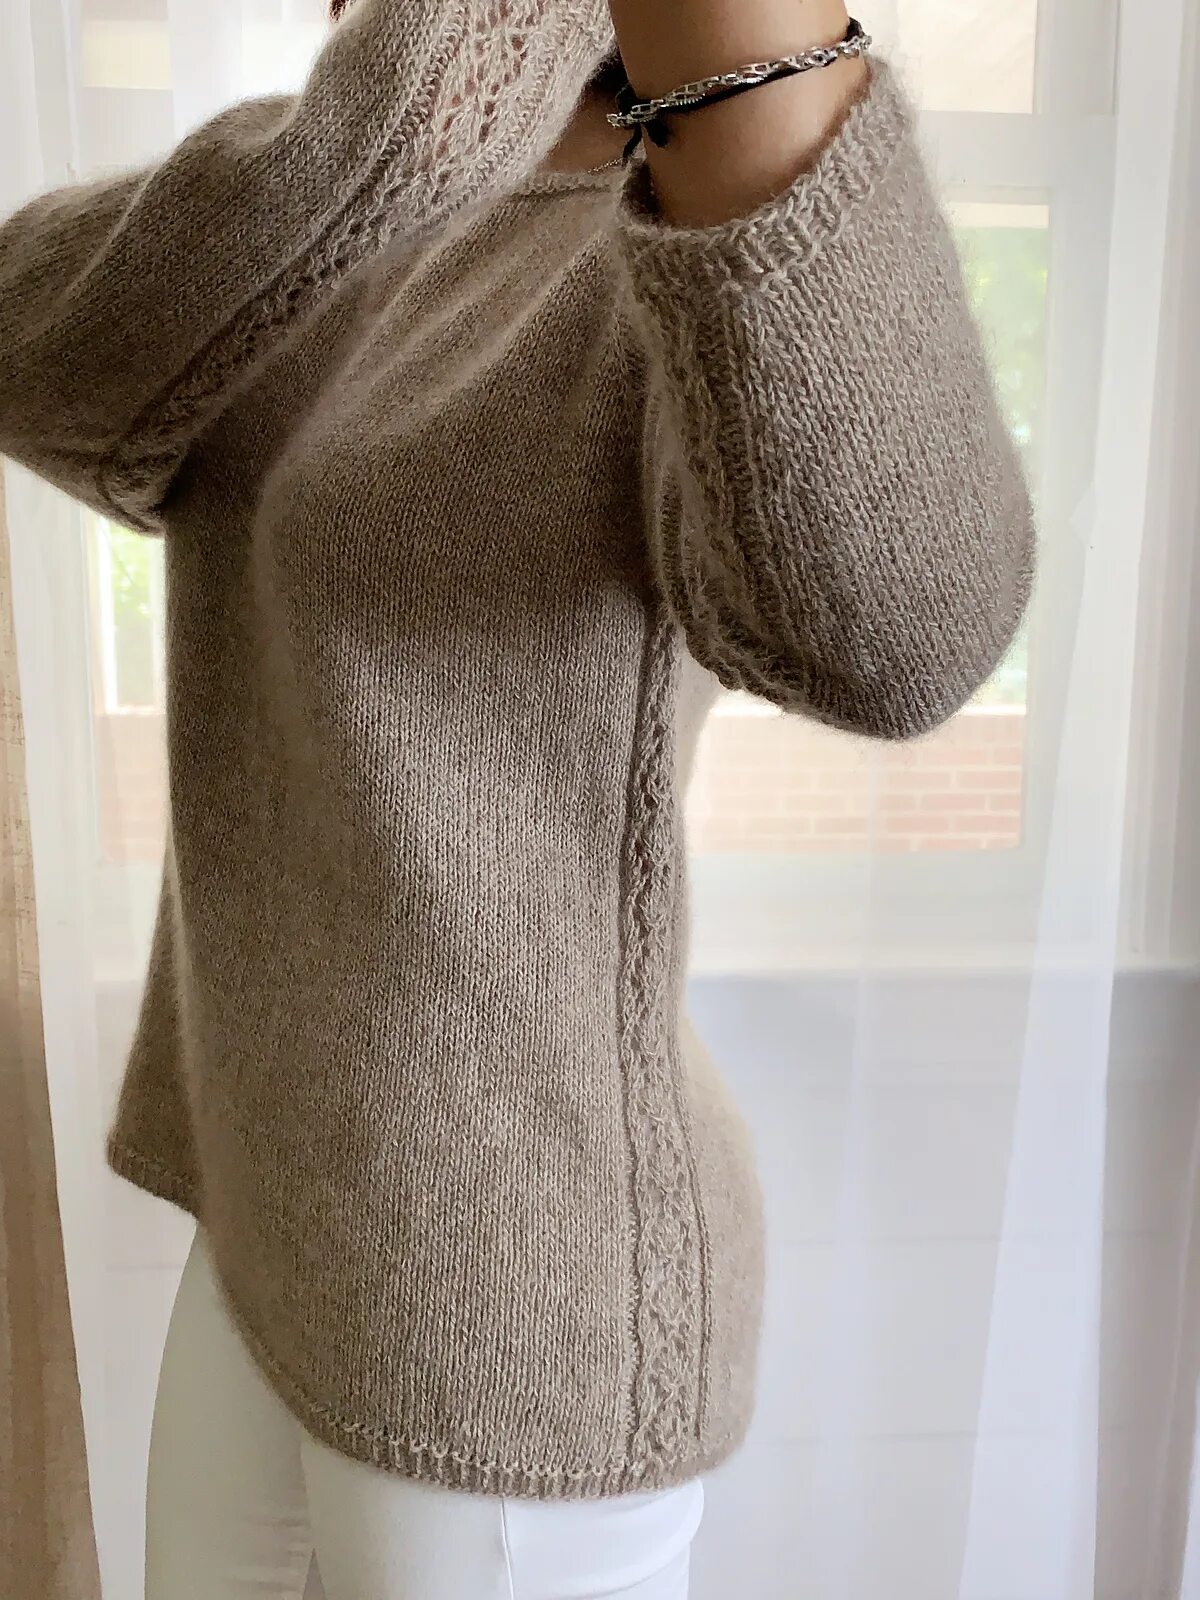 Кашемировый пуловер Хуанита. Кашемировый пуловер Juanita. Свитер из кашемира спицами. Вязаный свитер из кашемира.